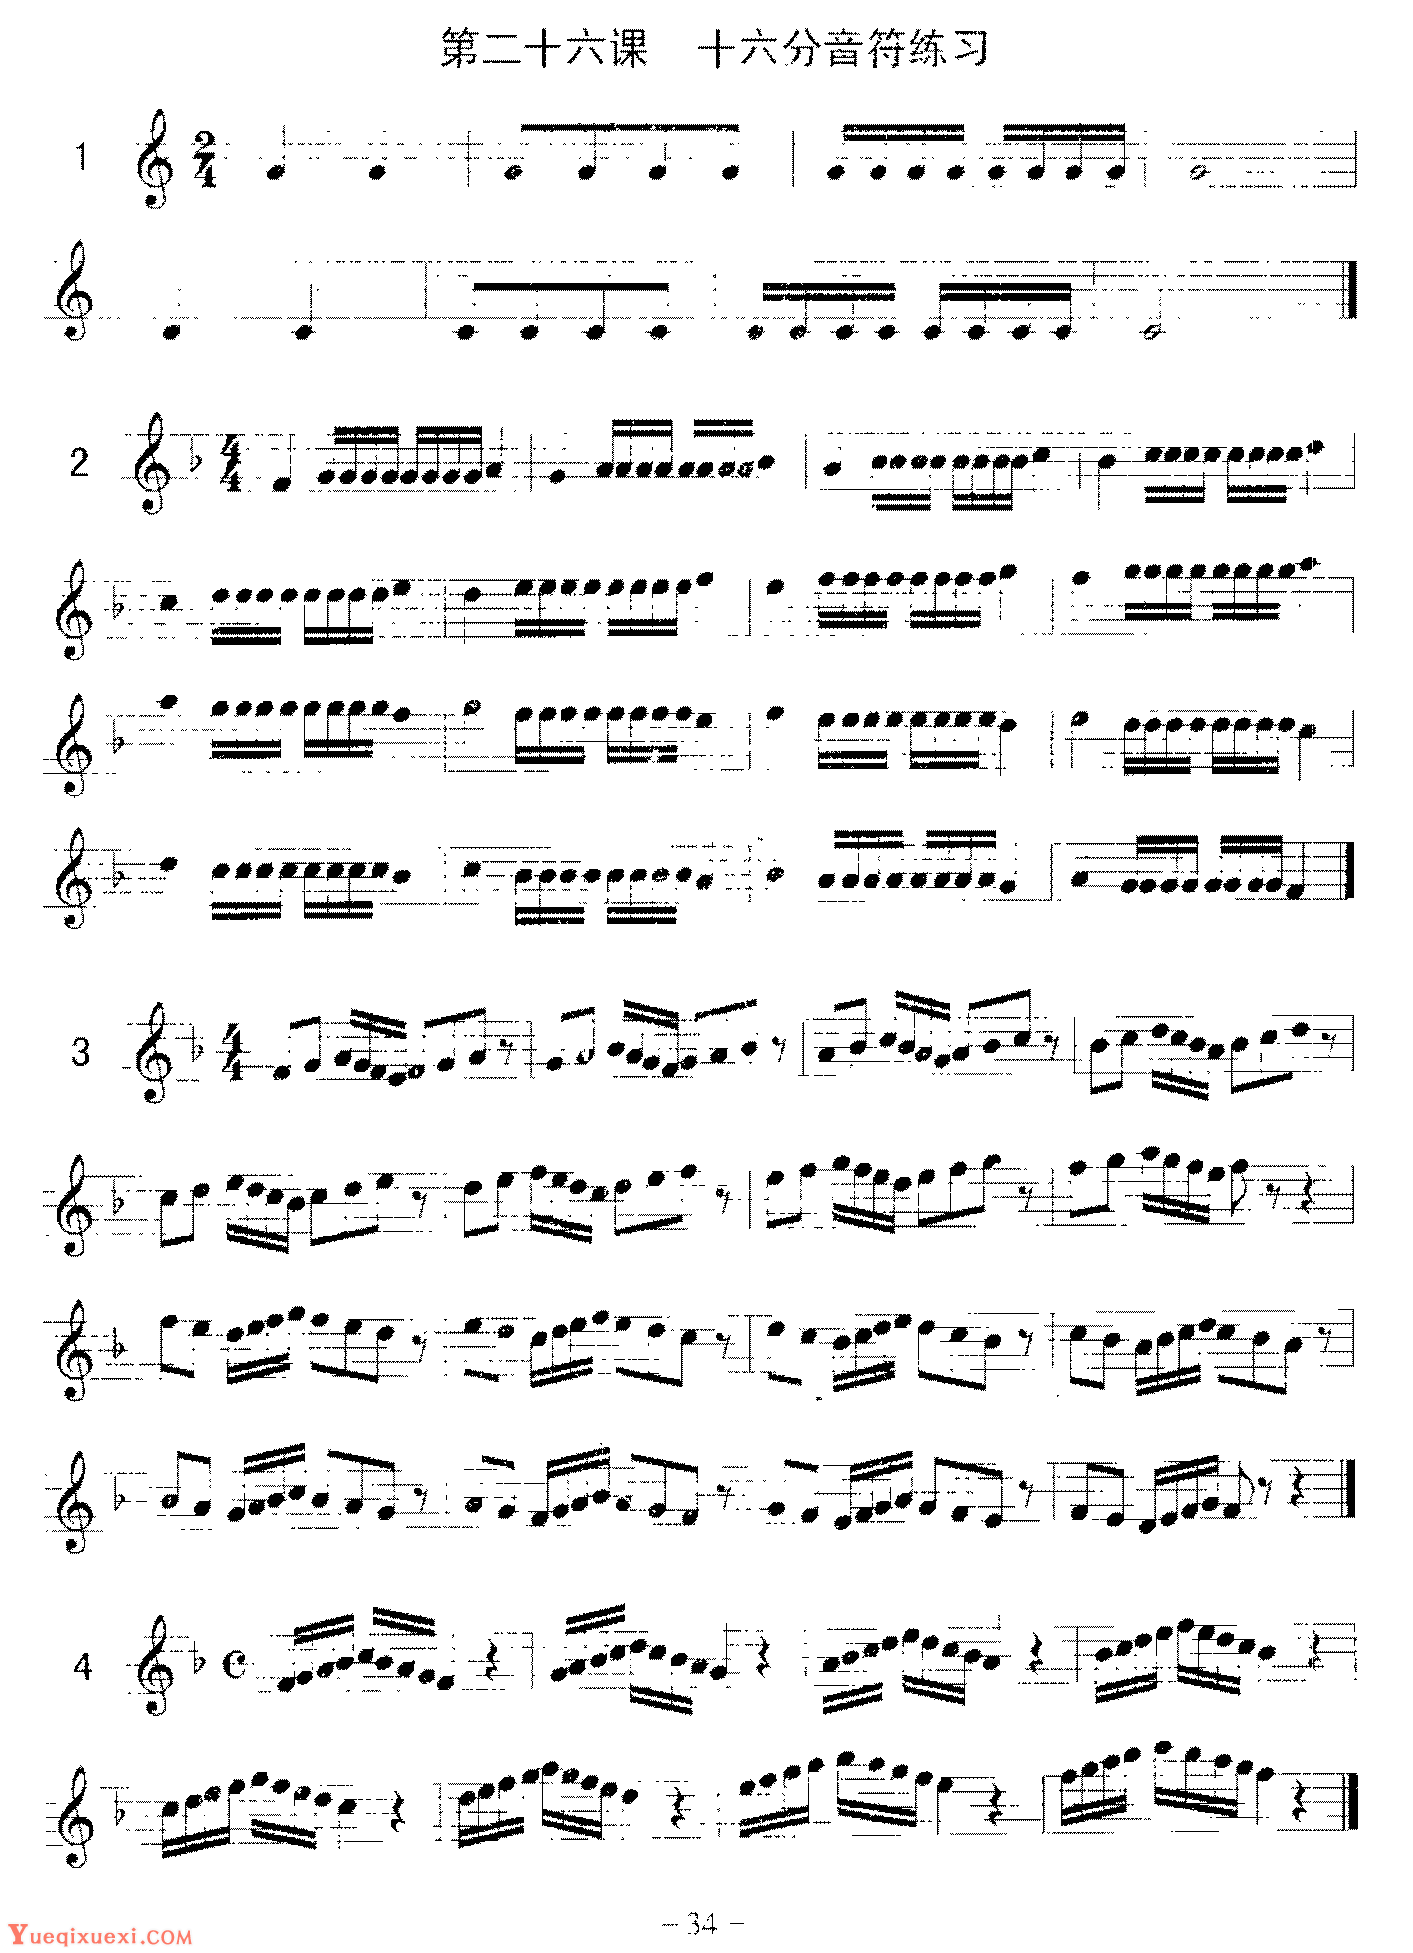 十六分音符律动鼓谱 - 爵士鼓节奏大全 - 架子鼓谱 - 琴谱网